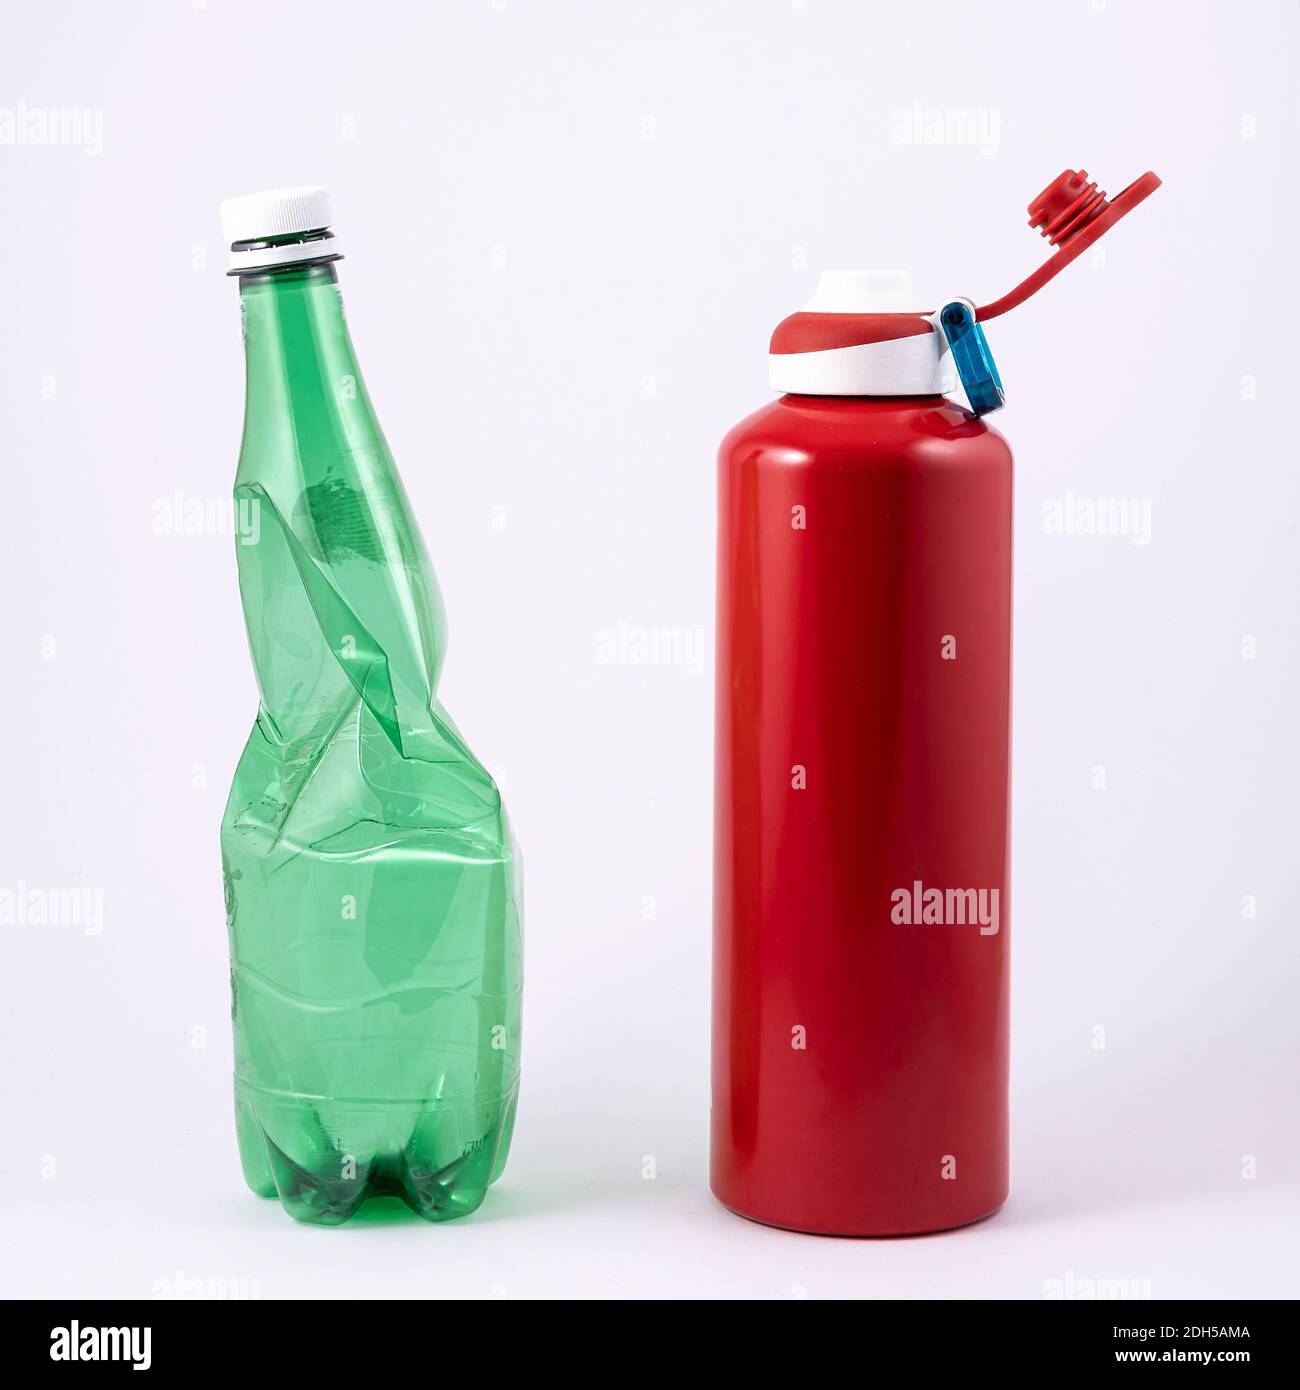 la scelta ecologica: dalla bottiglia di plastica alla bottiglia di alluminio riutilizzabile. Foto Stock